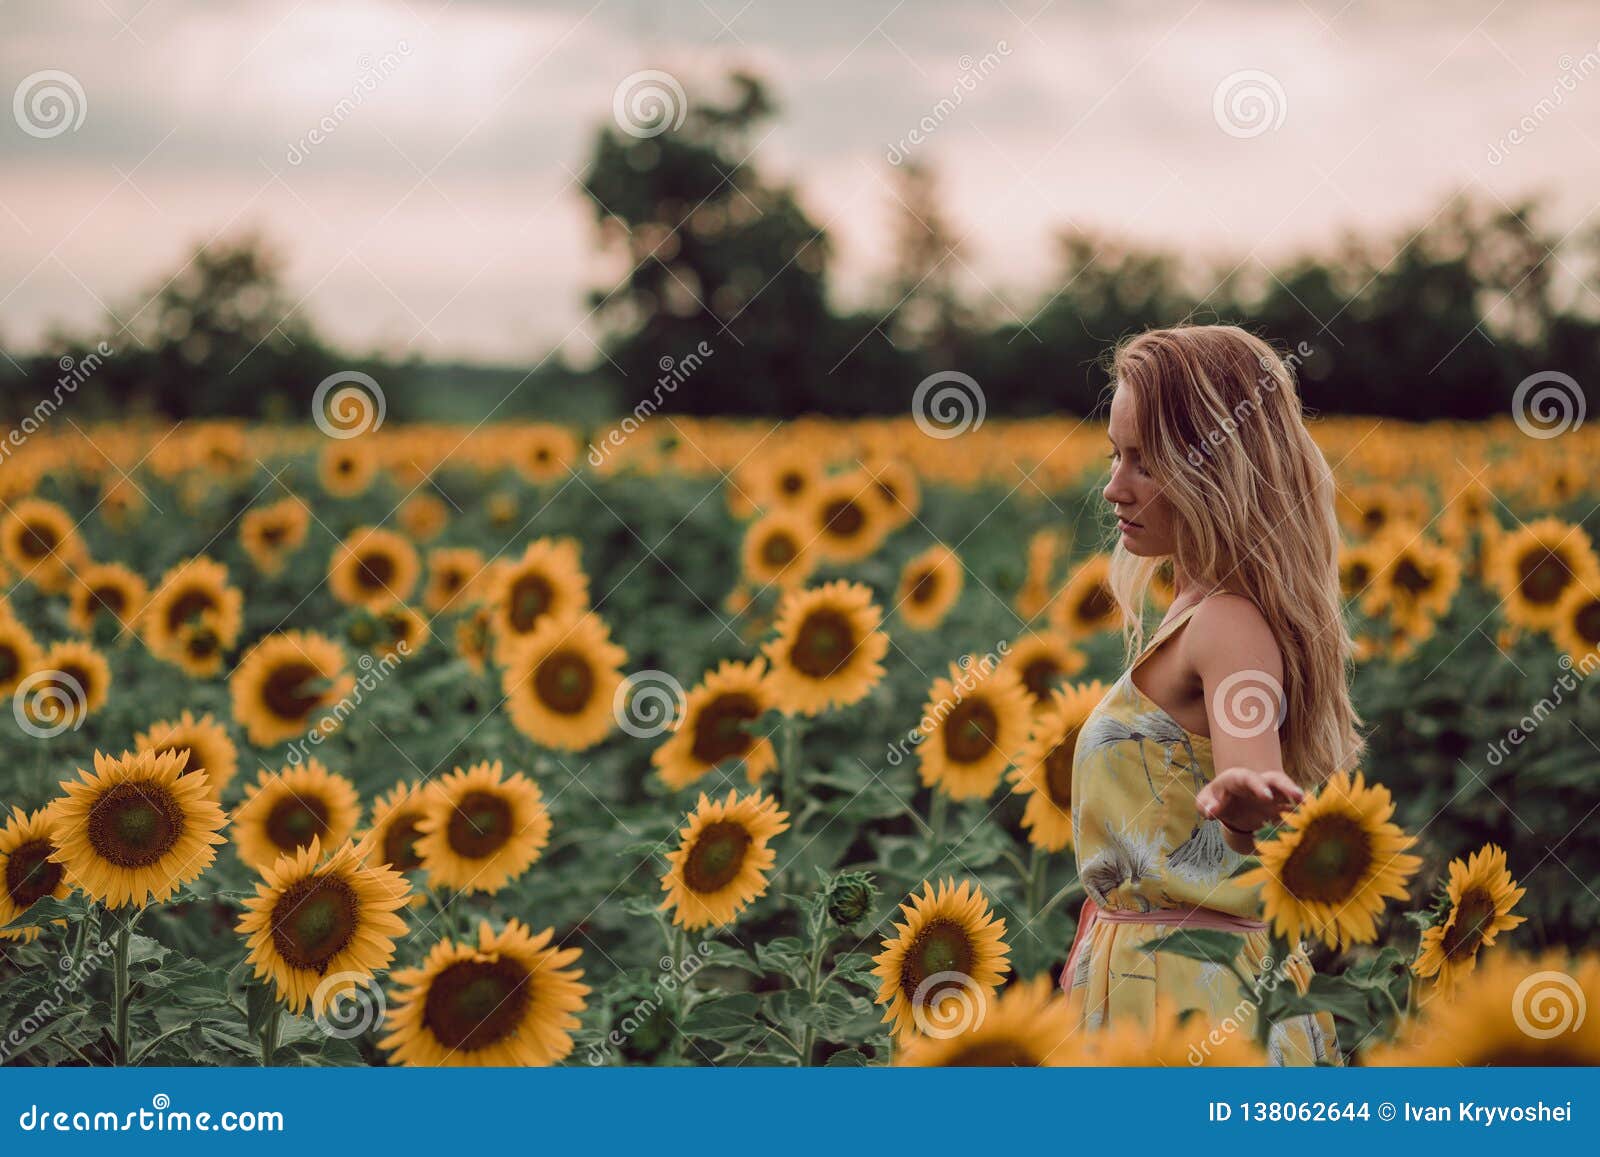 Het dromen van jonge vrouw in de gele bloemen van de kledingsholding met dient een gebied van zonnebloemen bij de zomer, mening terug van haar in Het kijken aan de kant De ruimte van het exemplaar